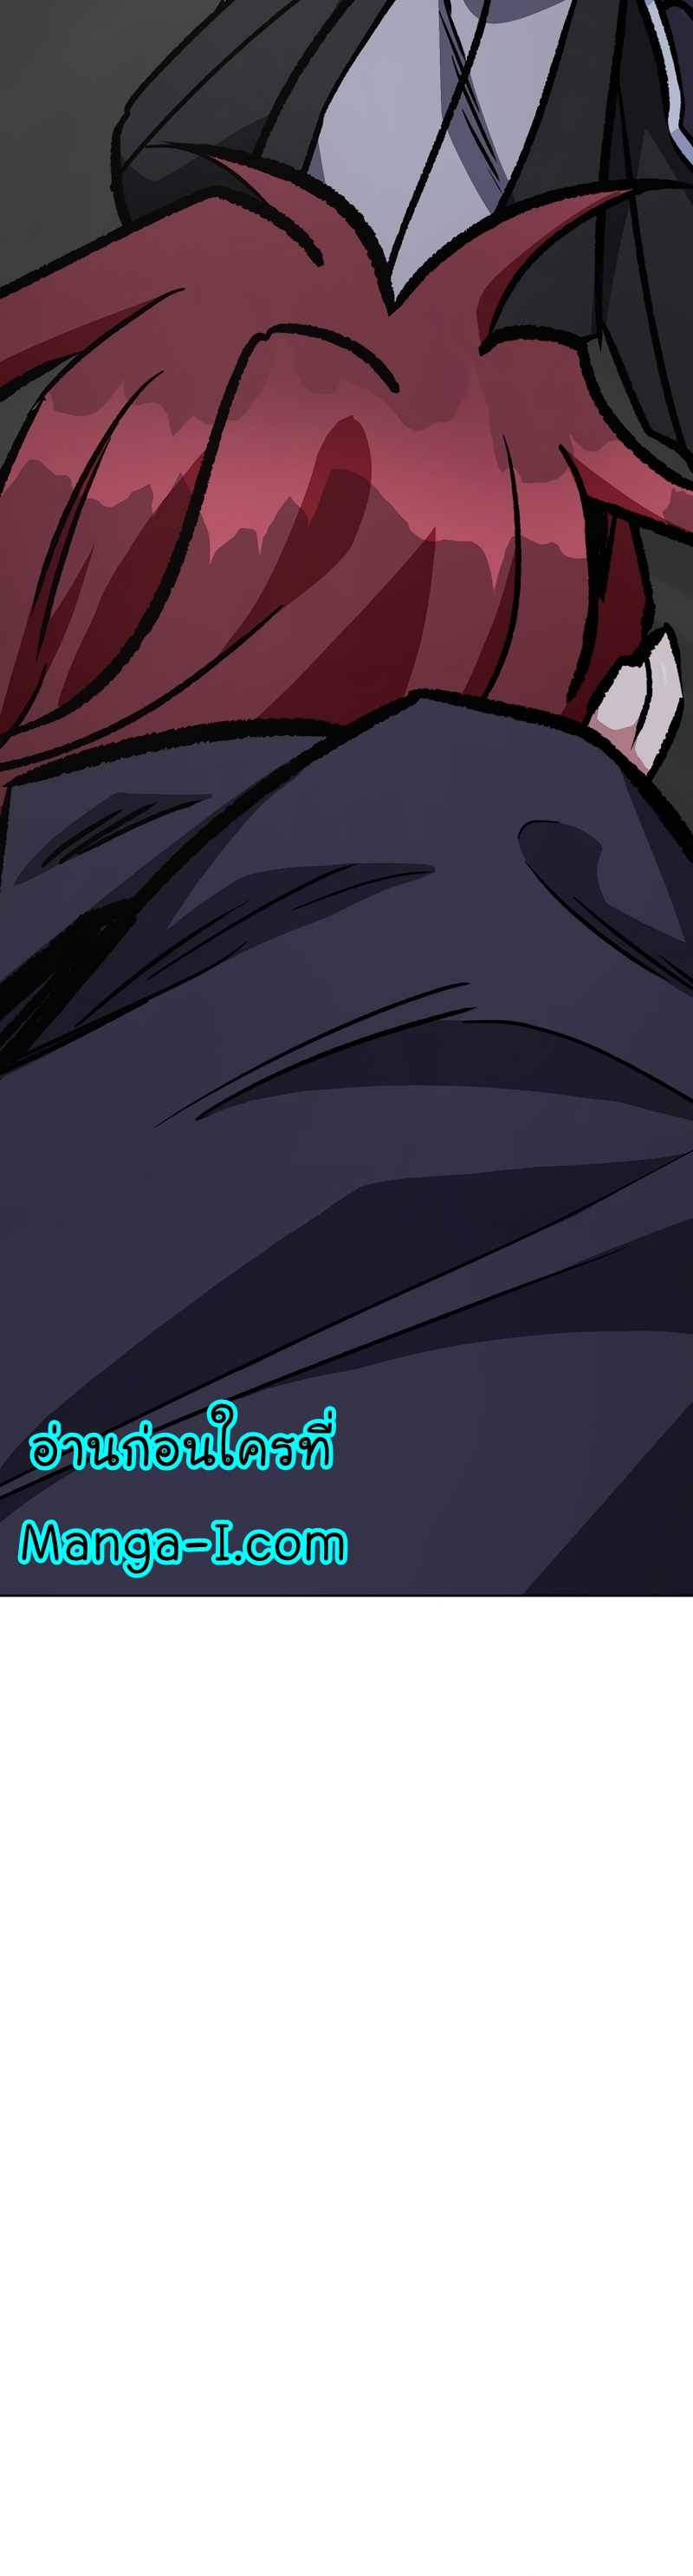 Manga Manhwa Level 1 Player 66 (21)